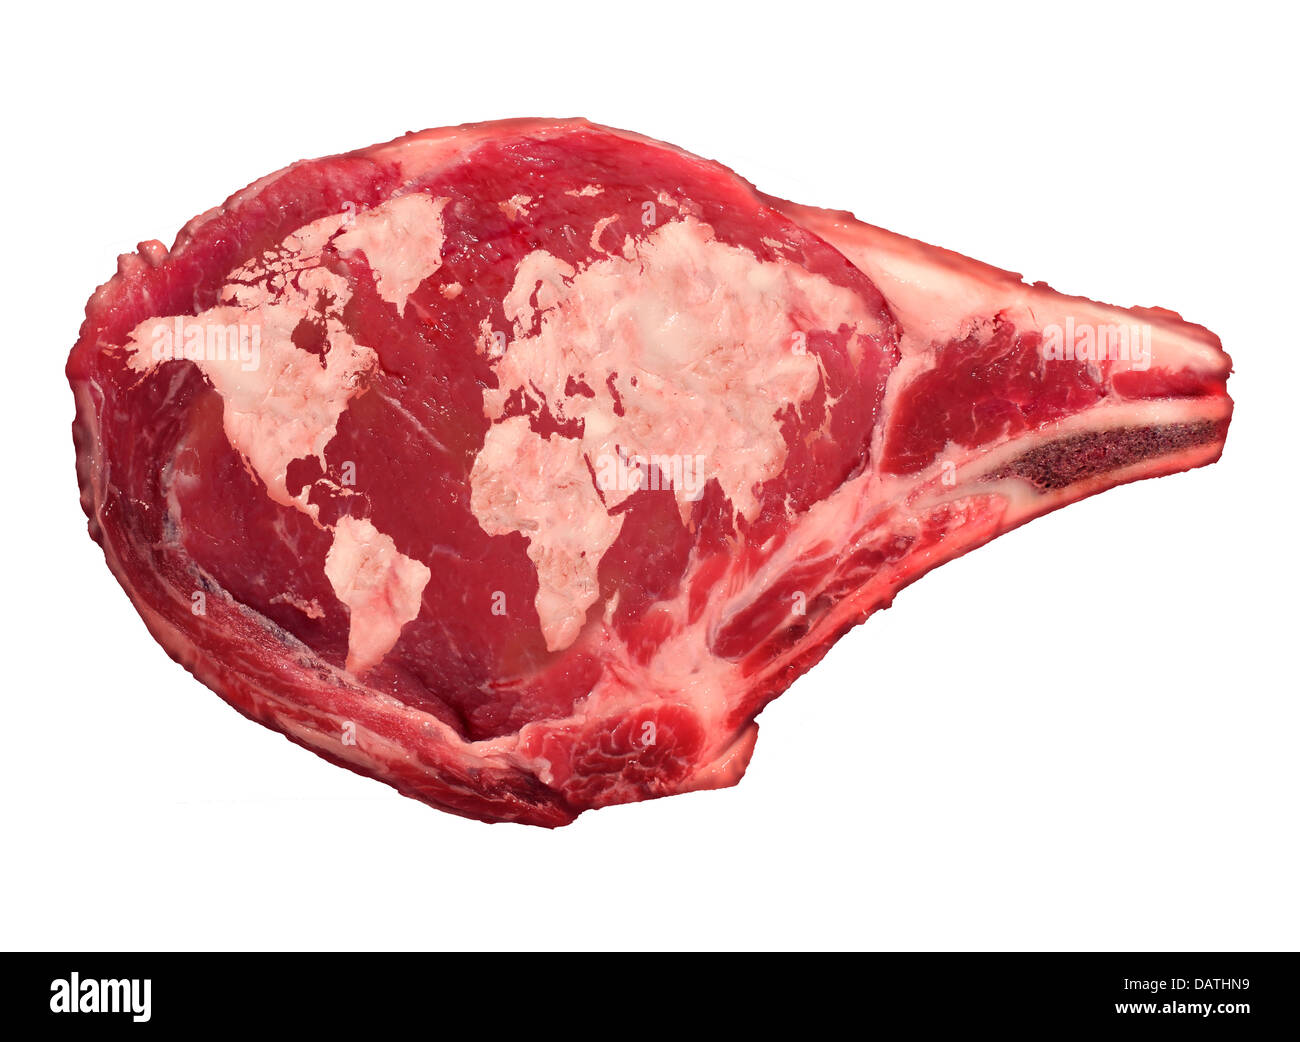 Global Fleisch Industrie und Rindfleisch essen Produktionskonzept als eine  rohe rote Rippenstück mit tierischen Fetten in Form von einer Karte von  Stockfotografie - Alamy